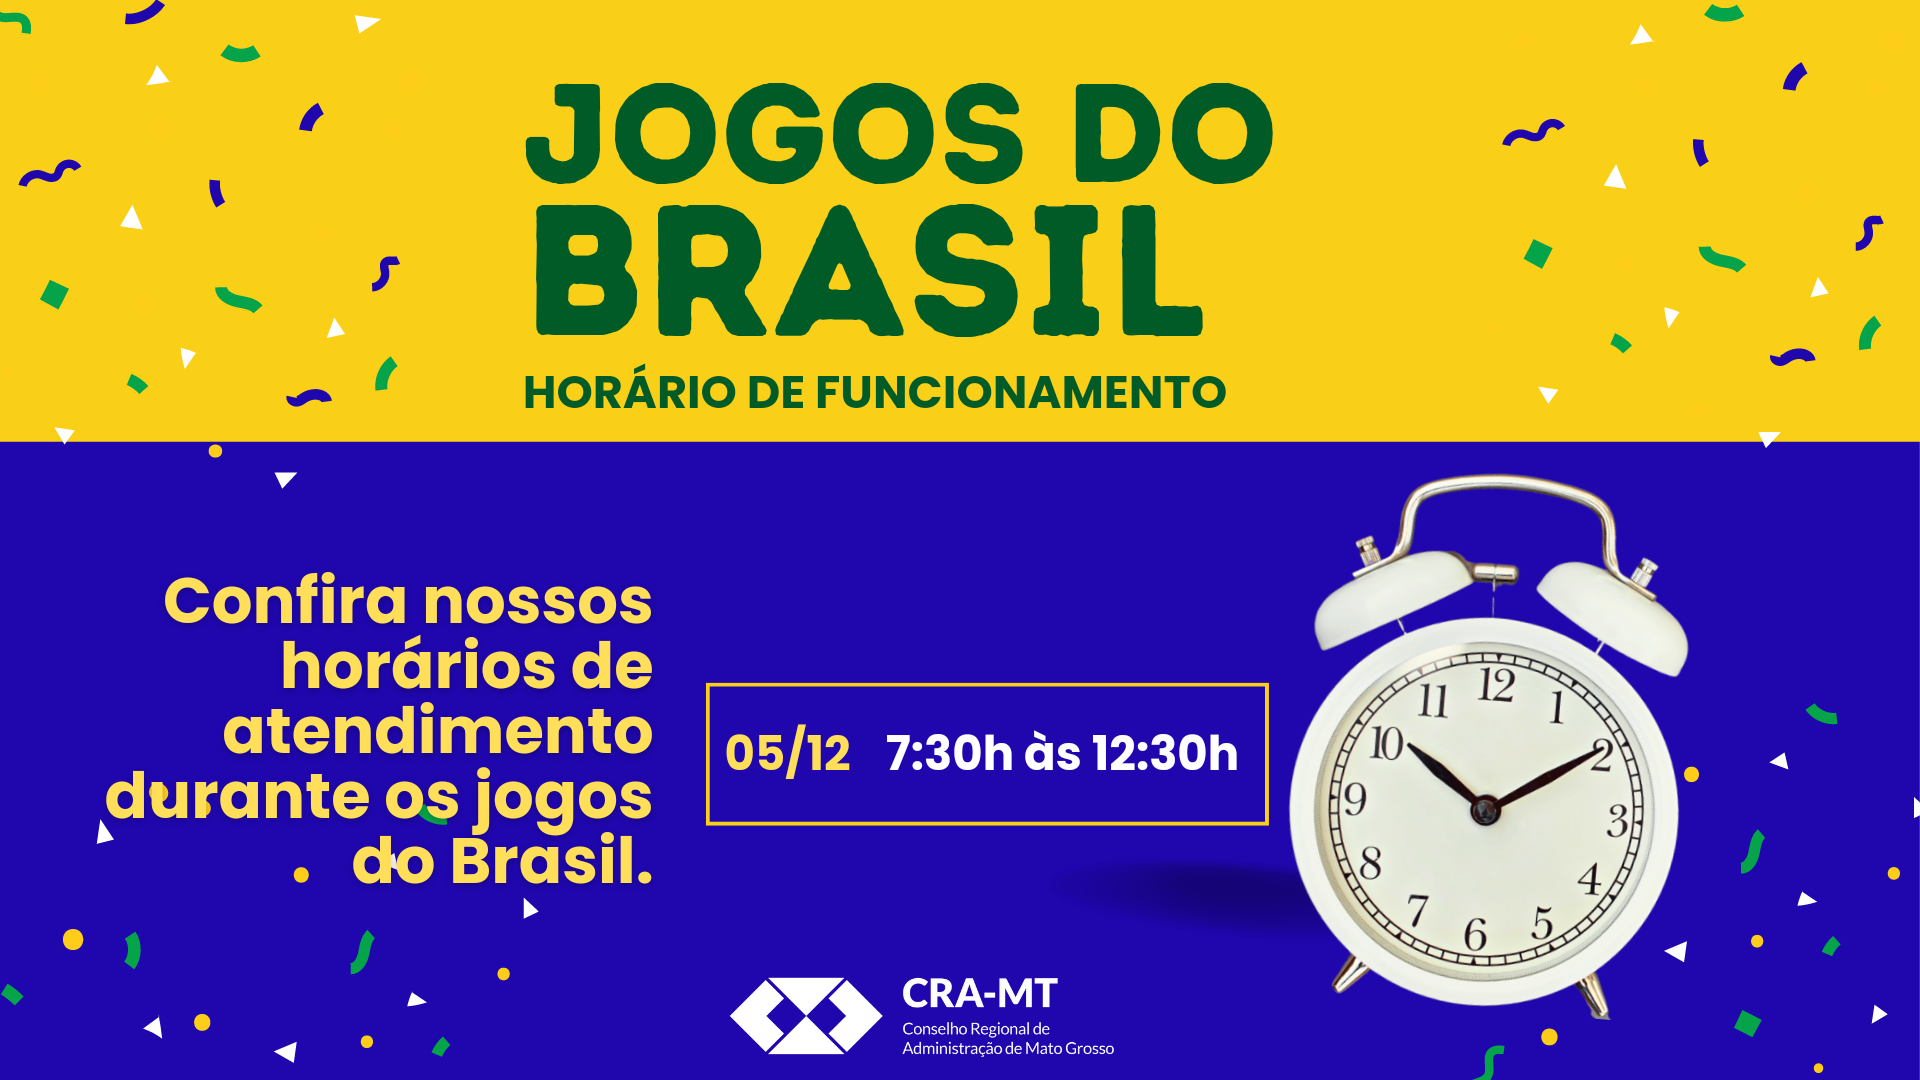 You are currently viewing Horários de Atendimento durante os Jogos do Brasil